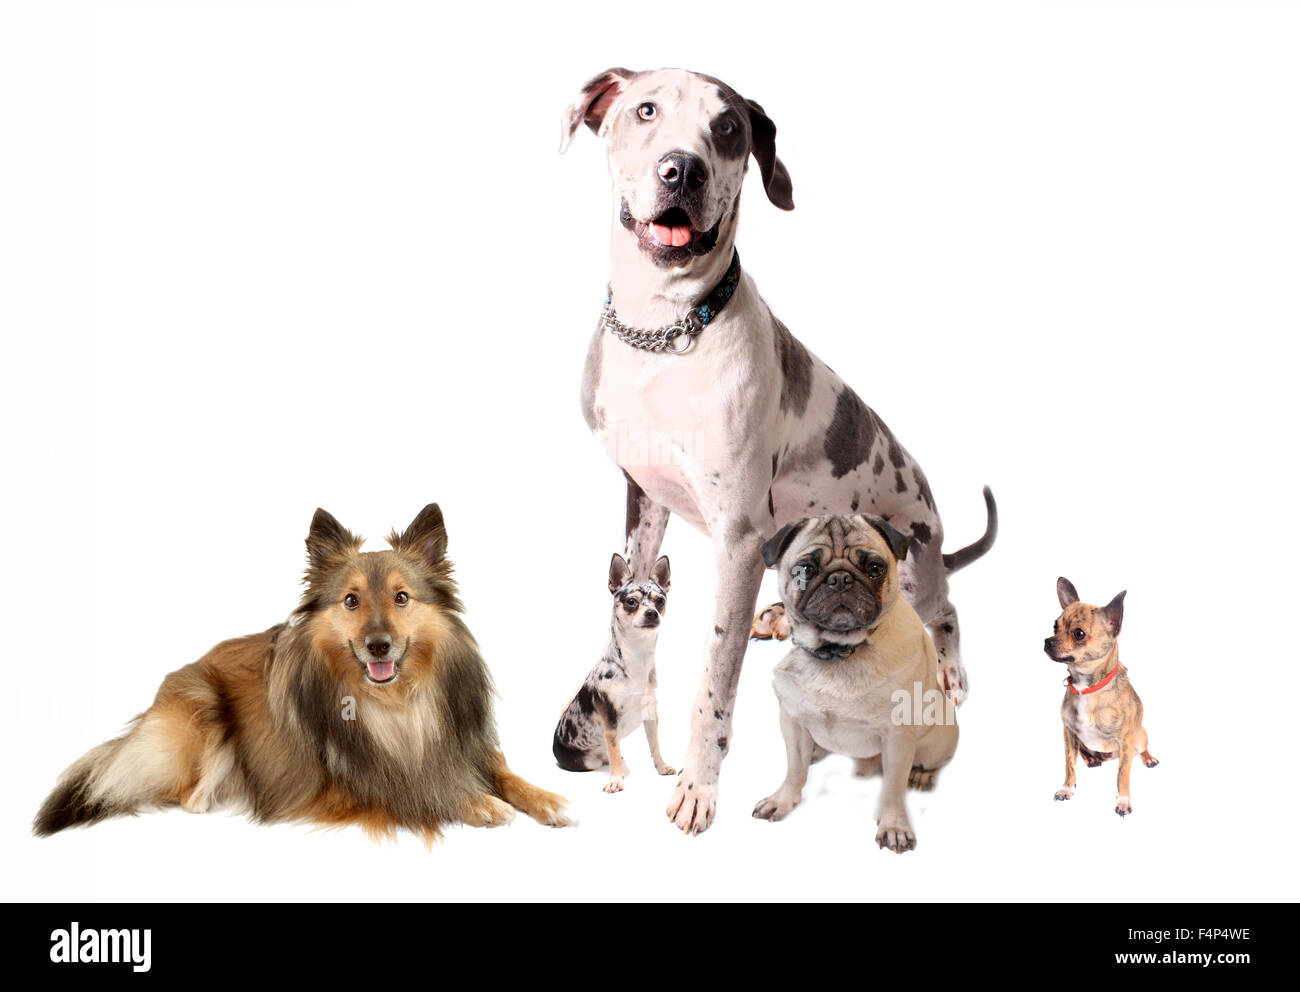 Verschiedenen Rassen der Hunde wie Chihuahuas, Dogge, Sheltie und Mops sitzen zusammen auf einem weißen Hintergrund Stockfoto